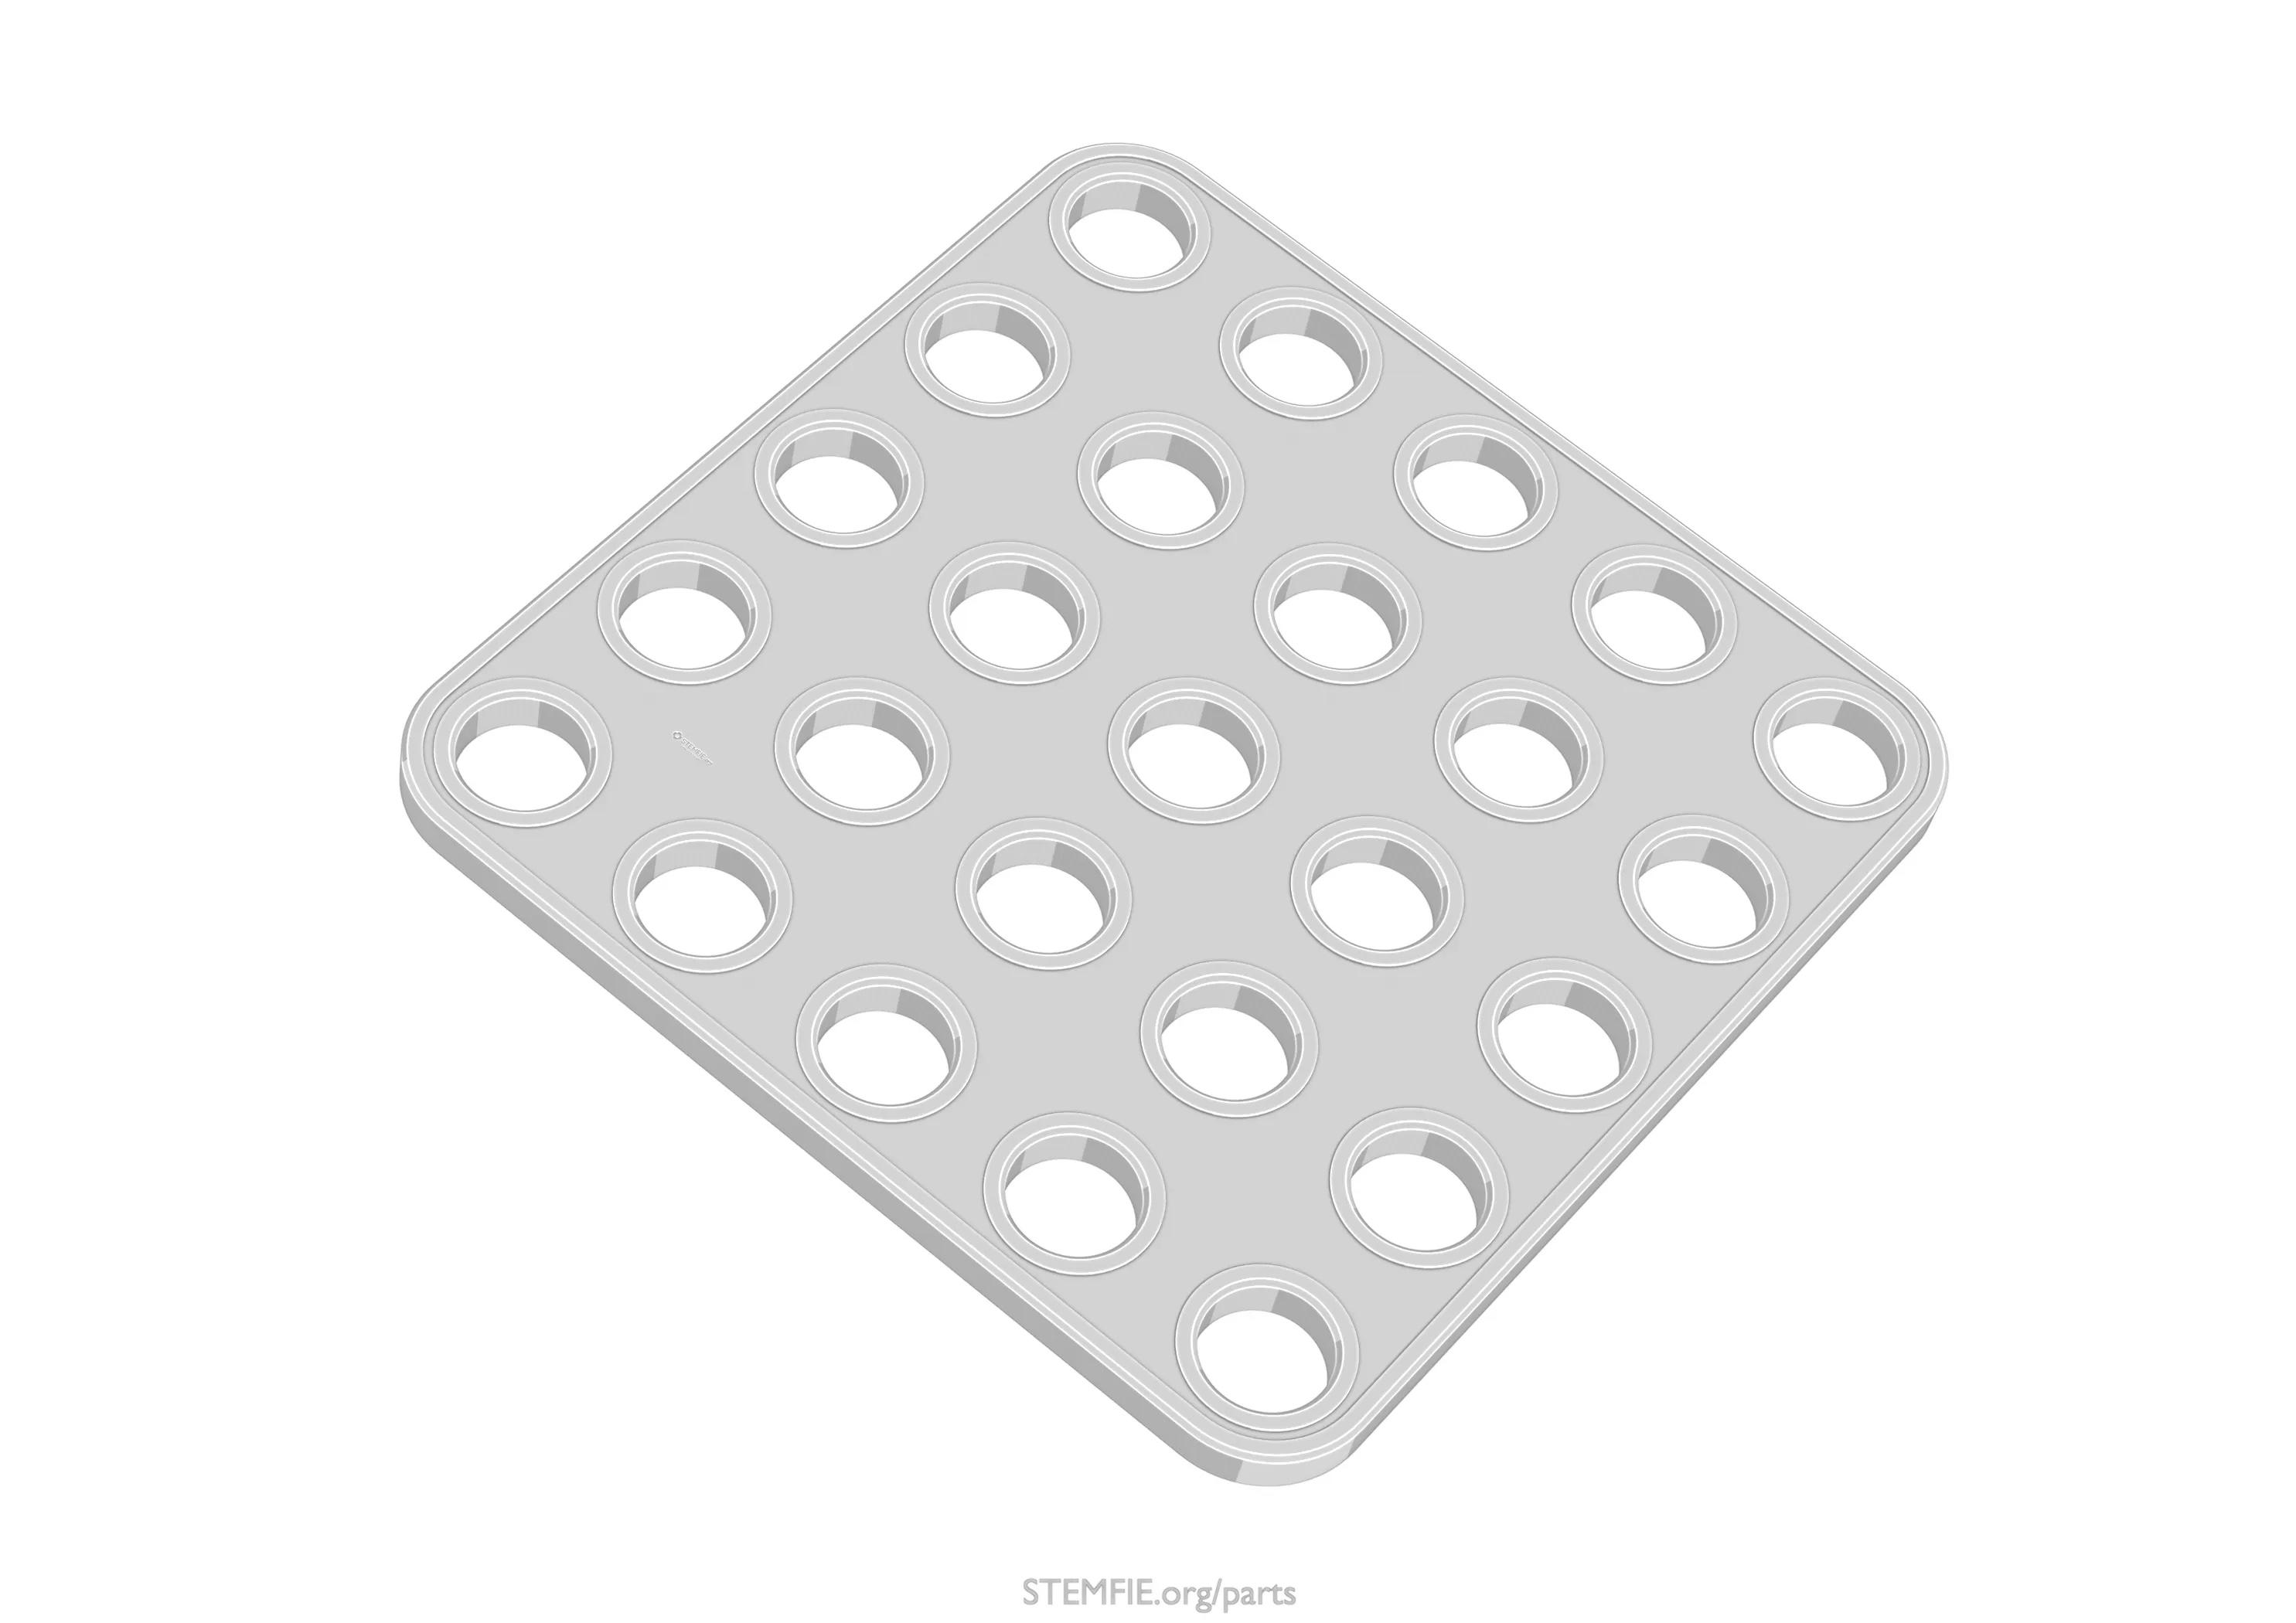 STEMFIE - Parts - Plates - 4-Square 3d model